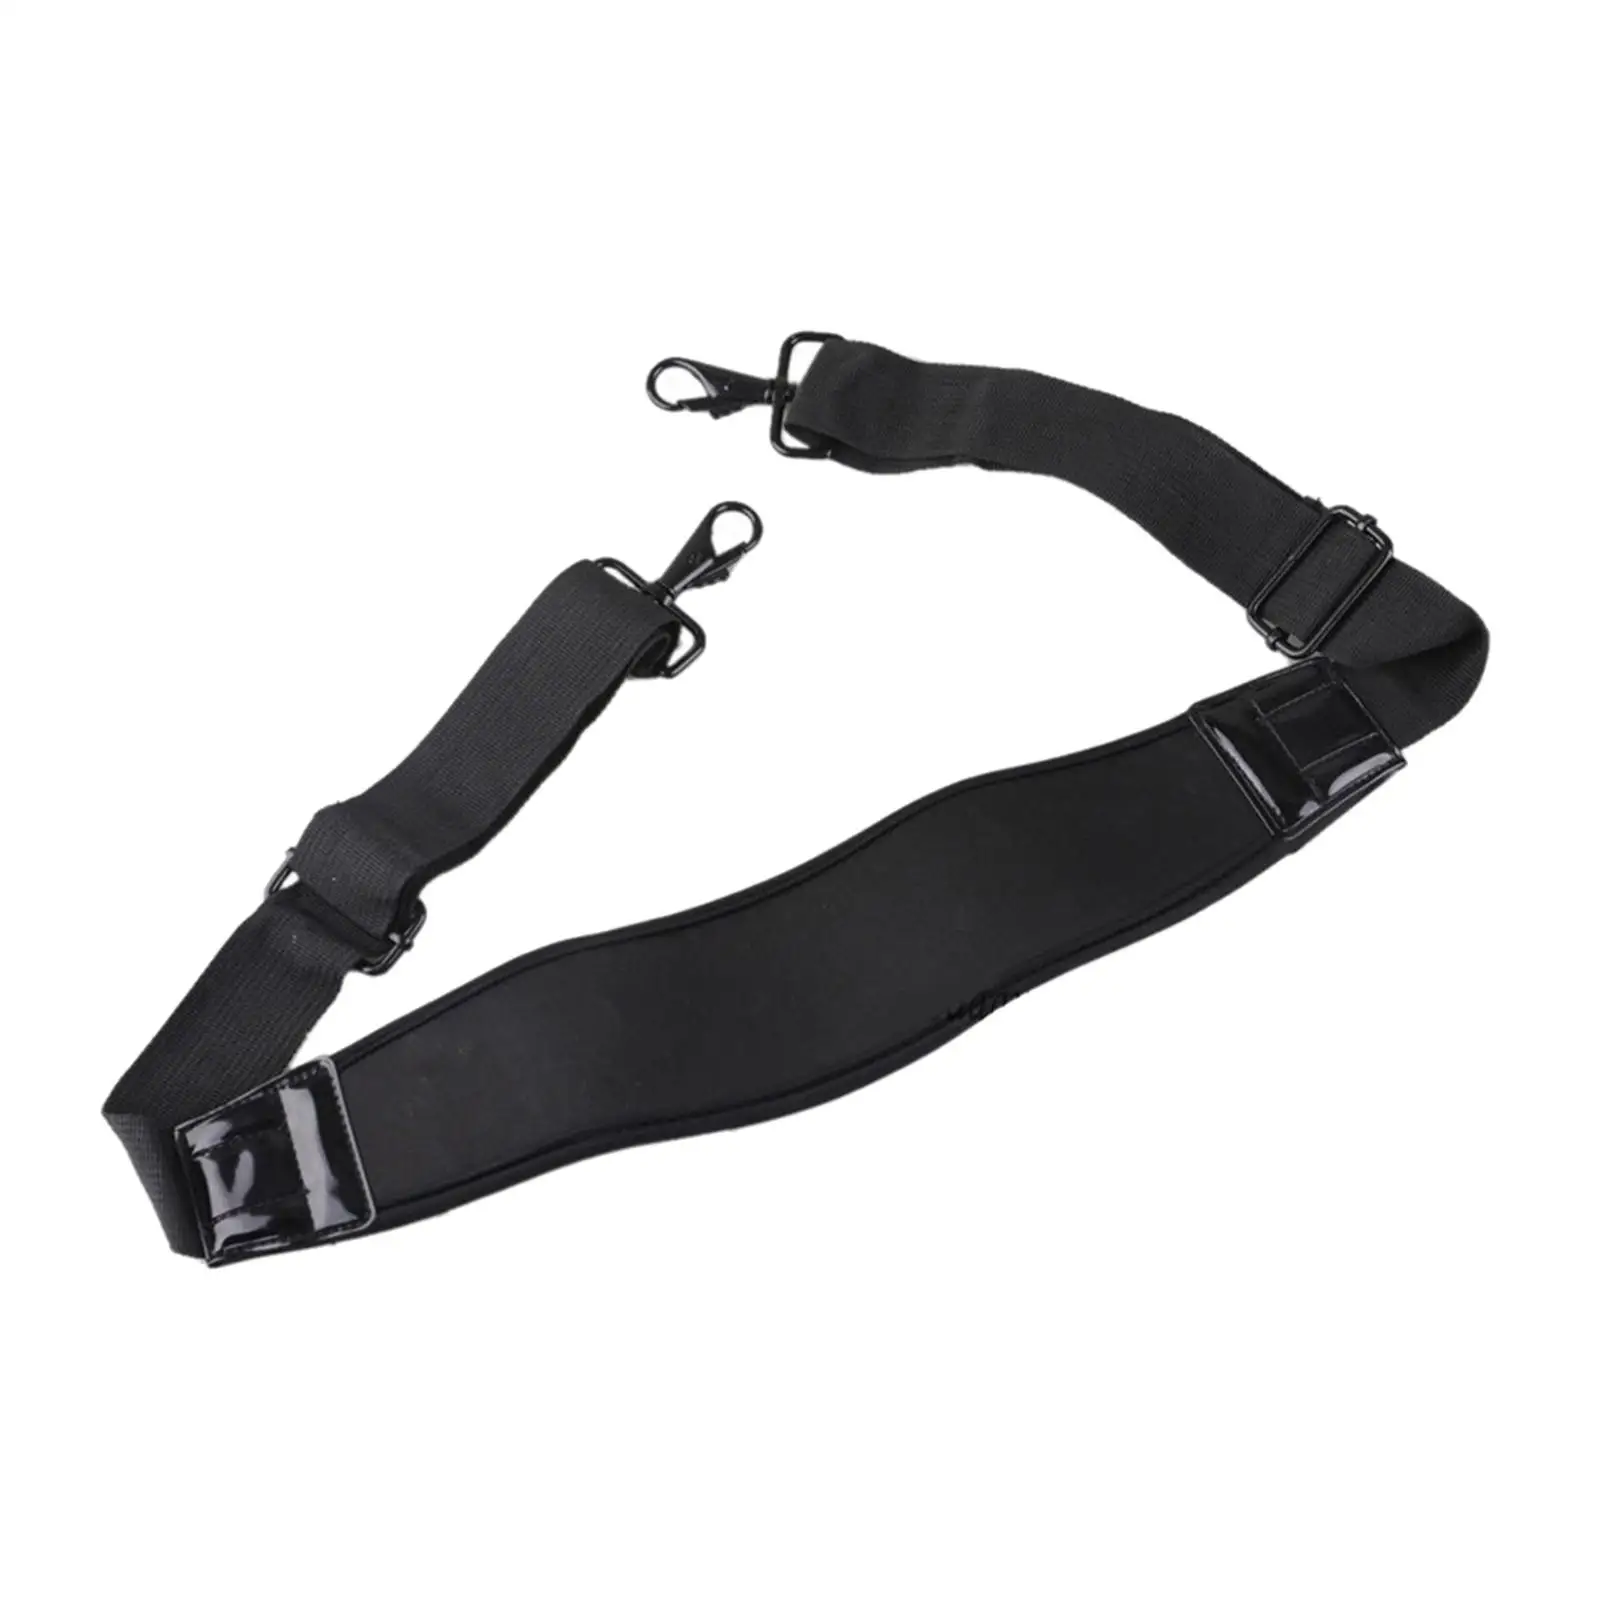 Shoulder Strap Belt Adjustable with Metal Hooks Soft Comfortable 52inch Black Thick Anti Slip for Camera Luggage Bag Laptop